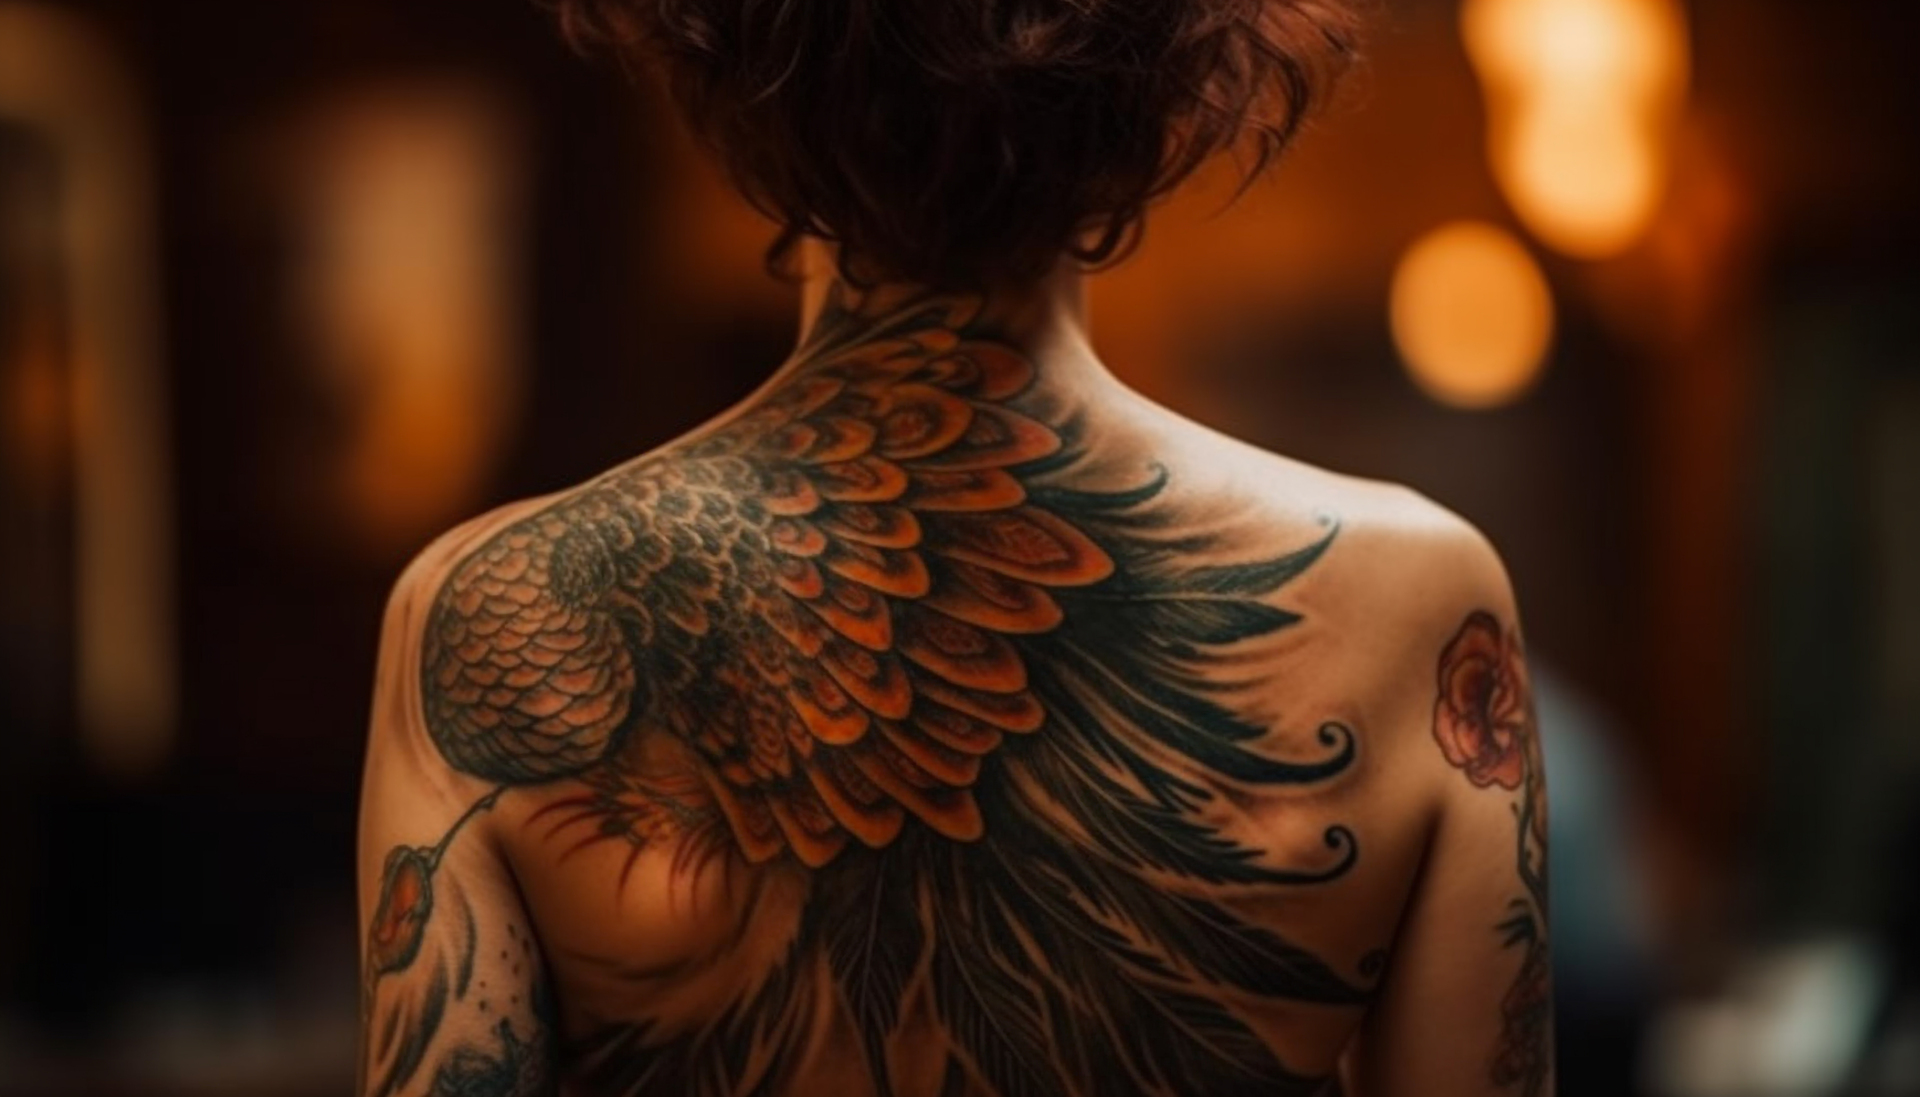 Na obrazku widoczny jest wspaniały tatuaż przedstawiający piękne skrzydła umieszczone na ciele. Skrzydła są starannie wykonane, a ich detalizacja i subtelne cienie dodają im głębi i realizmu. Ten tatuaż z skrzydłami symbolizuje wolność, siłę i aspiracje, stanowiąc zarazem wyraz artystycznej ekspresji i indywidualności osoby, która go nosi